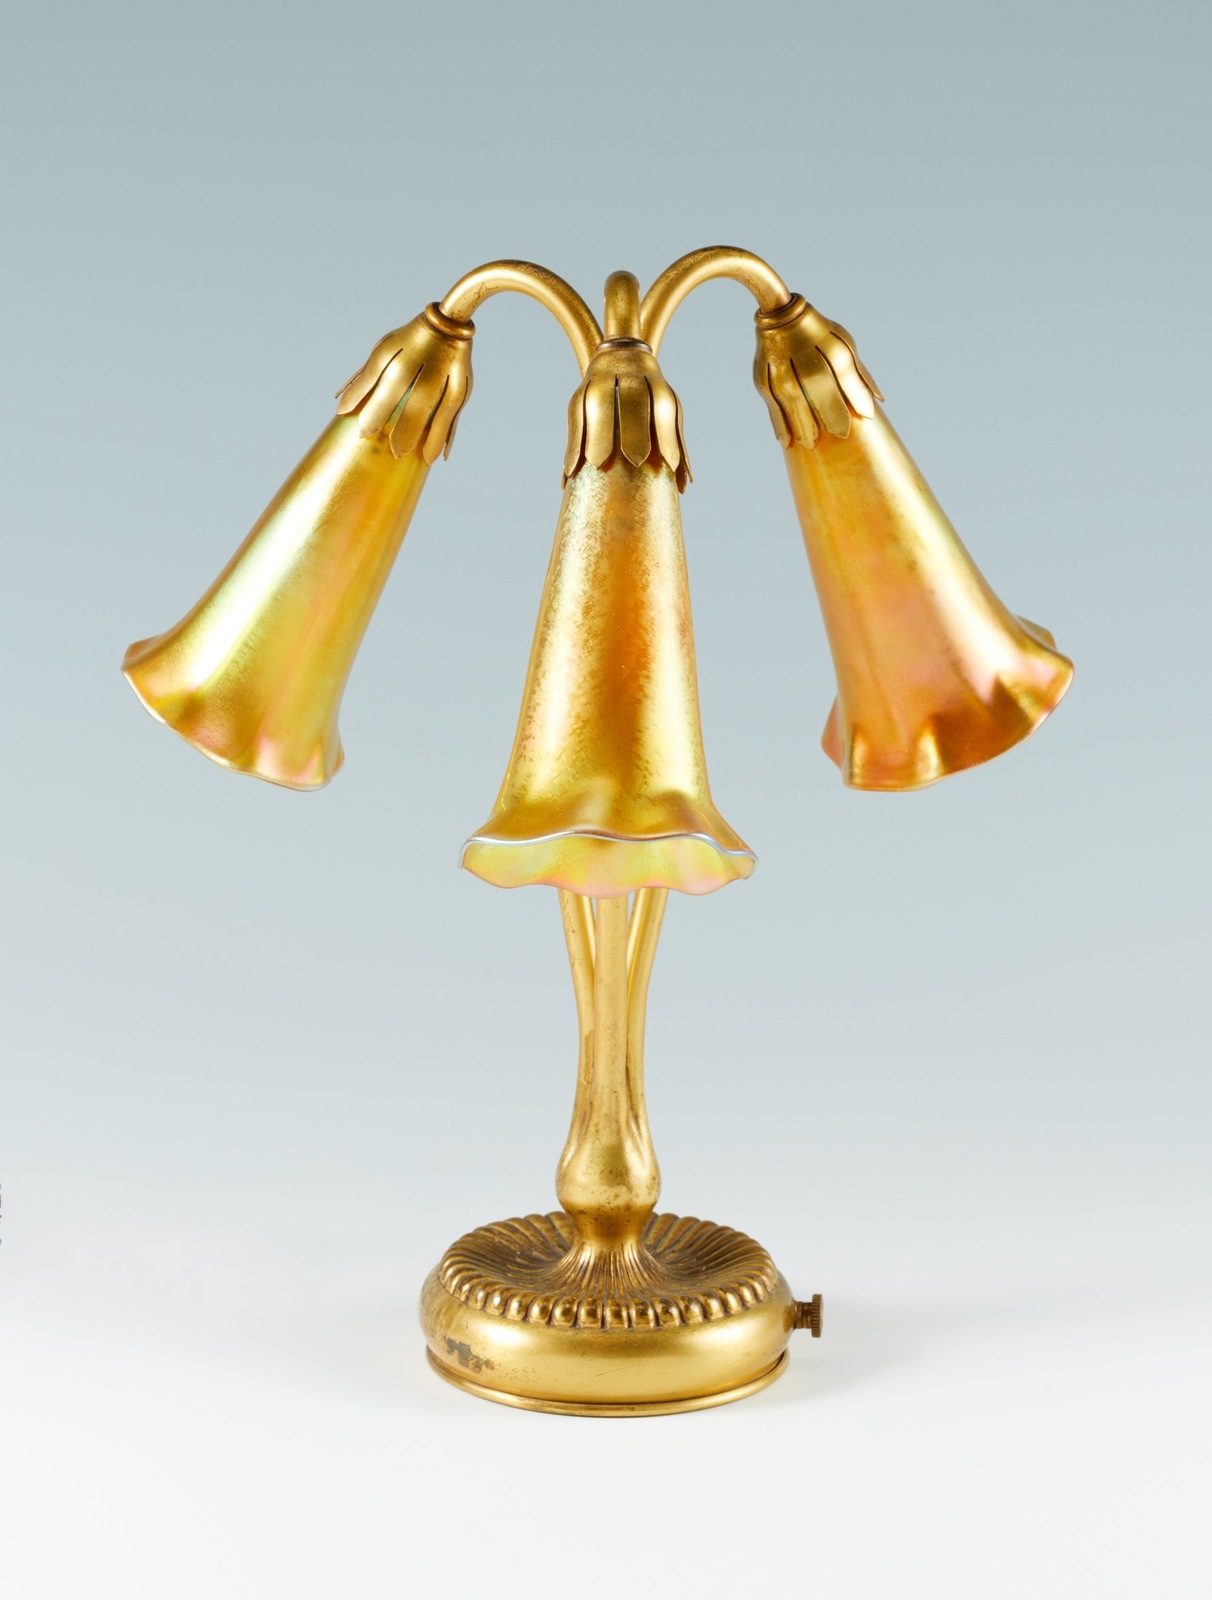 ティファニー・スタジオ 《三輪のリリィの金色ランプ》 1901-25年頃
Photo © Brain Trust Inc.